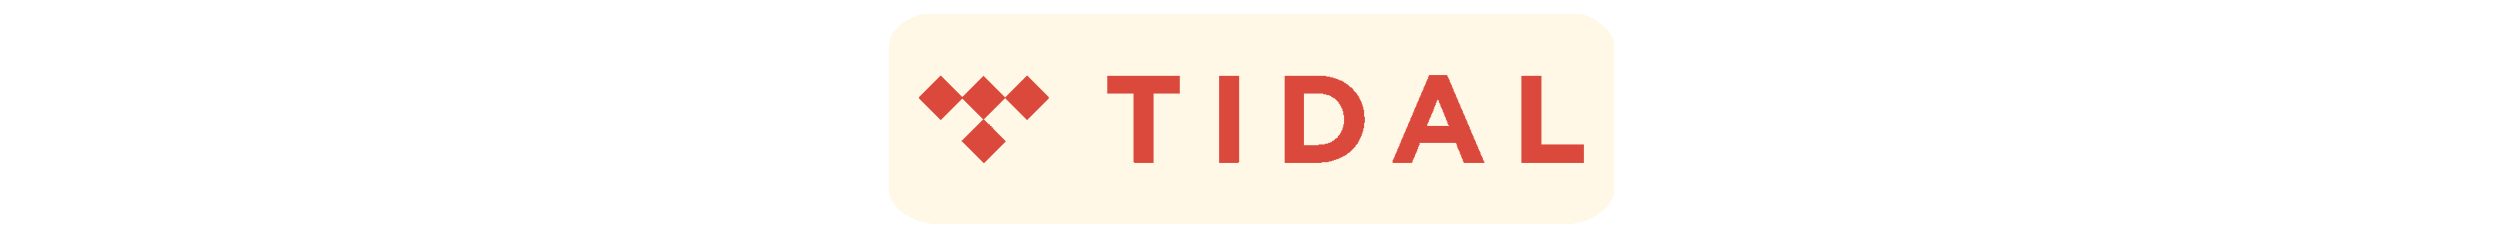 tidal.png